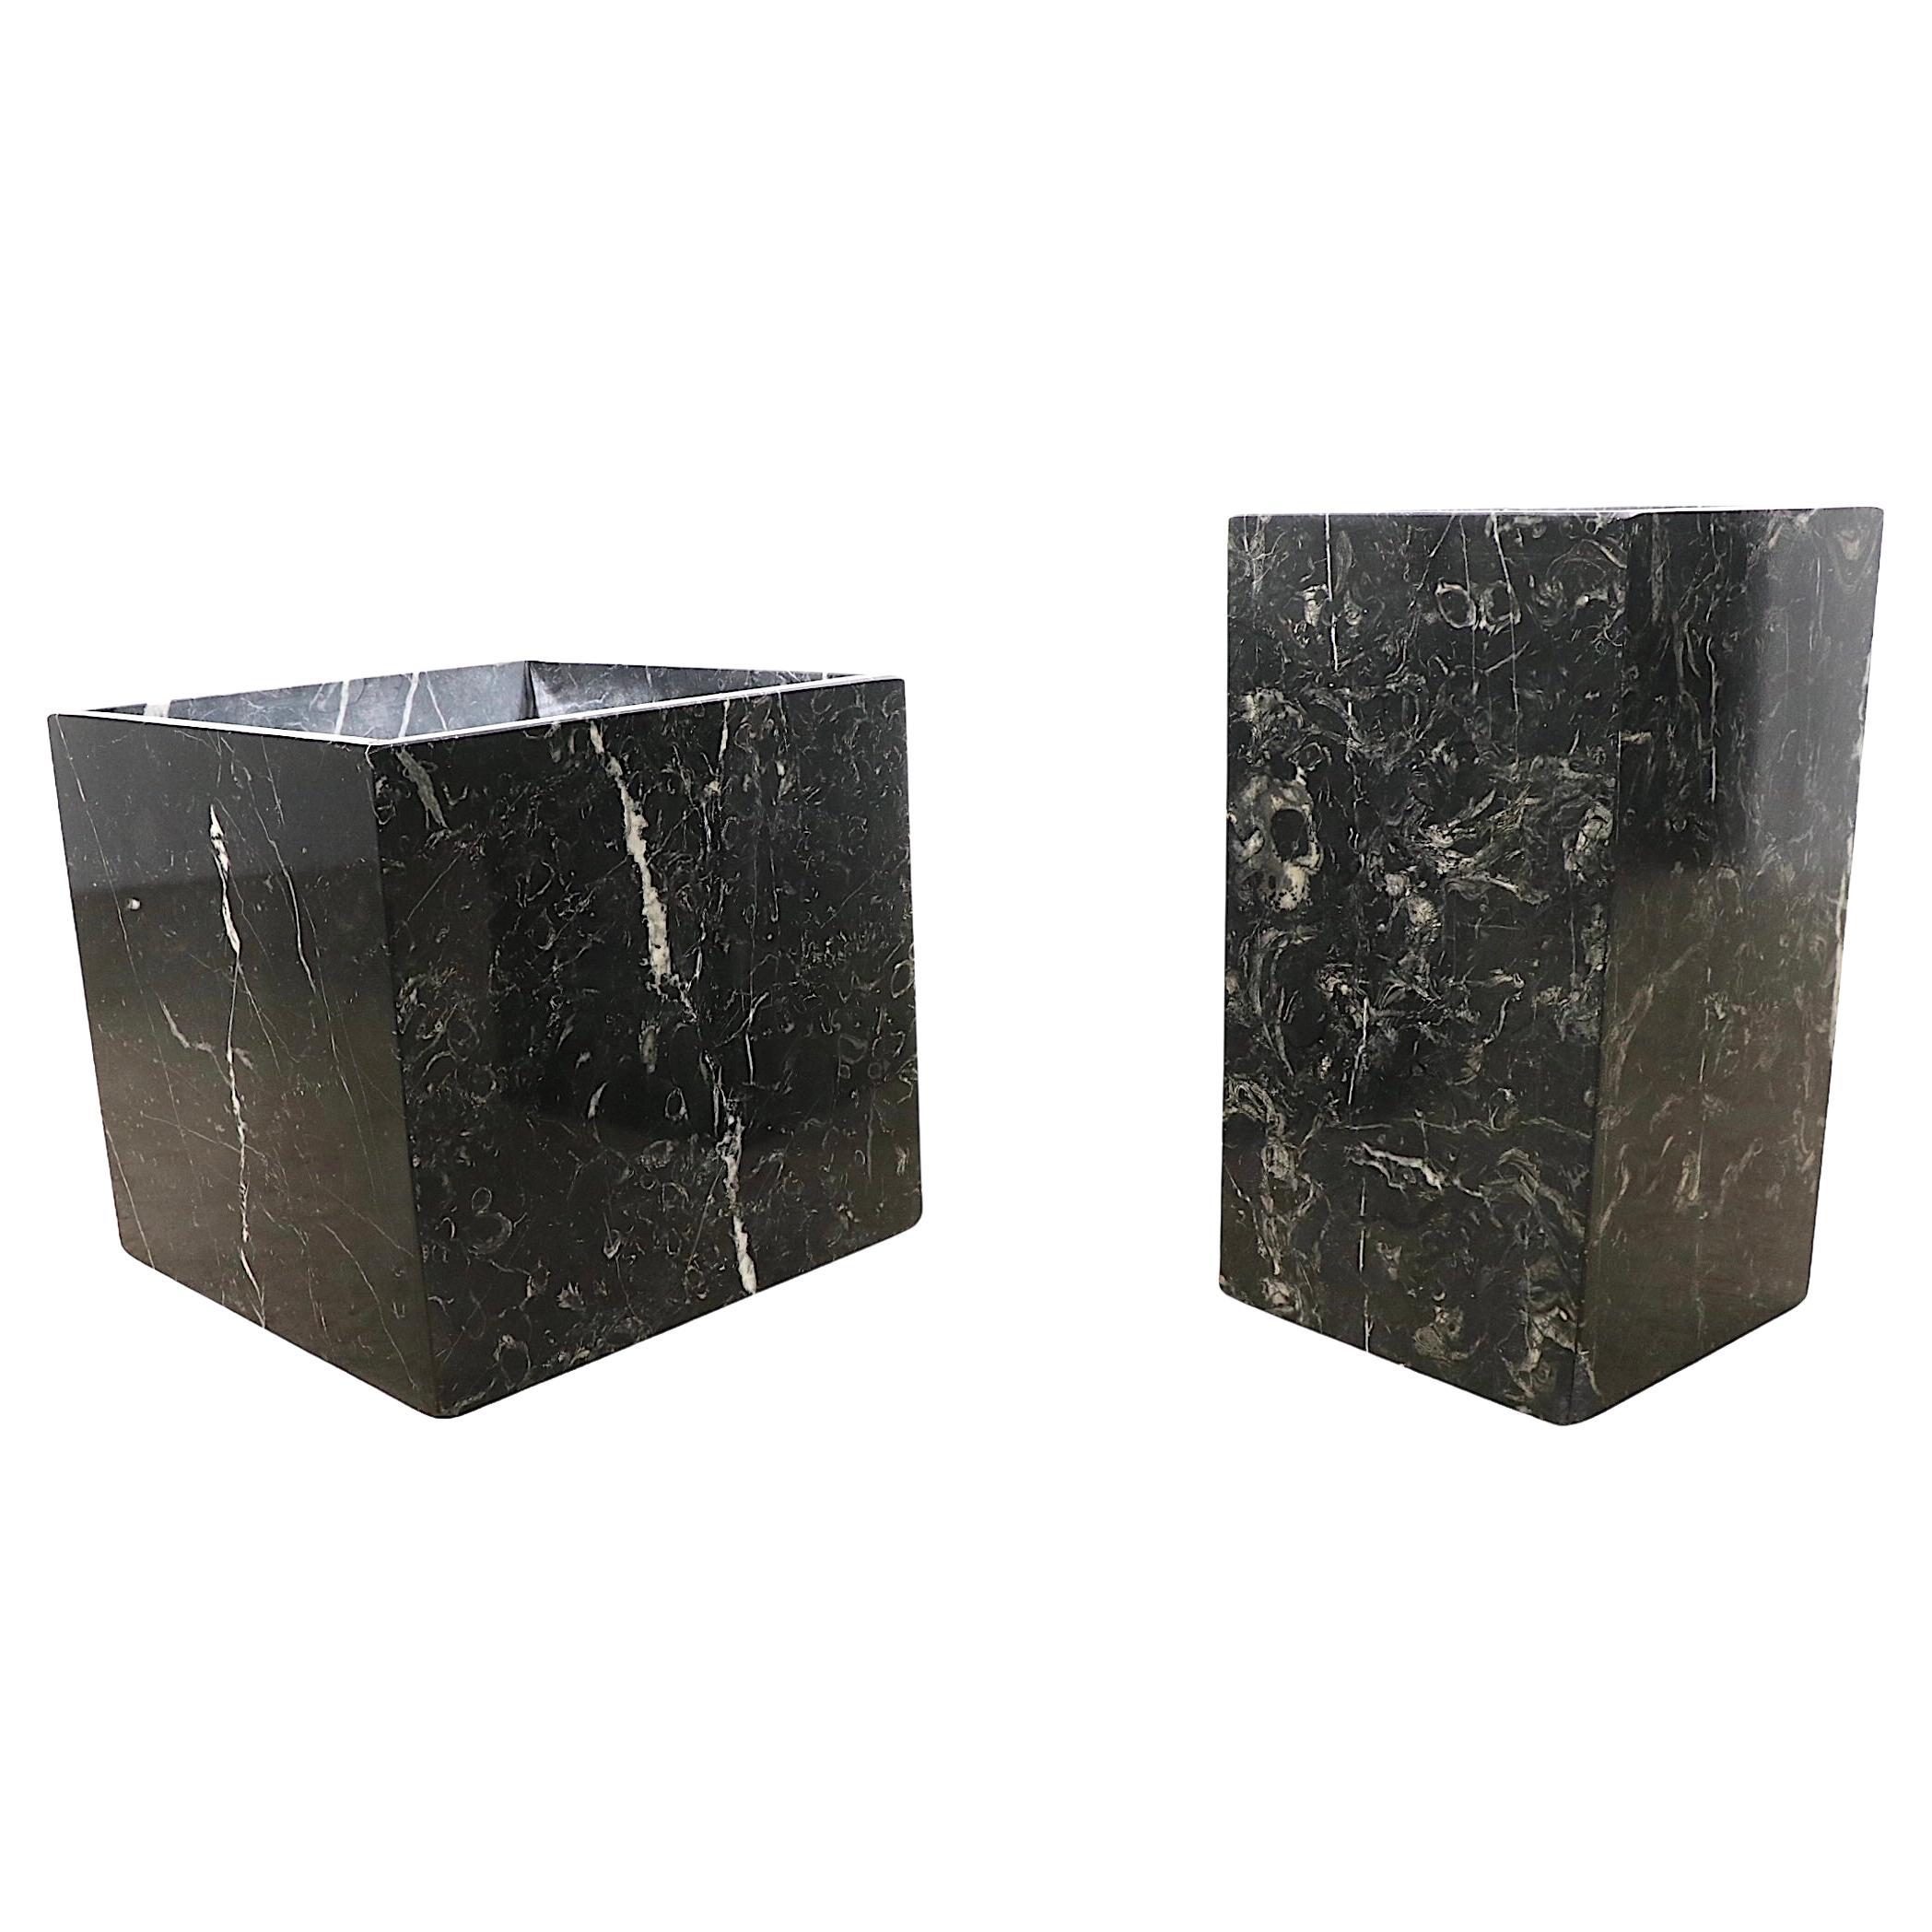 2 bases à piédestal en marbre noir - Bases de table - Jardinières - vers les années 1960/1970